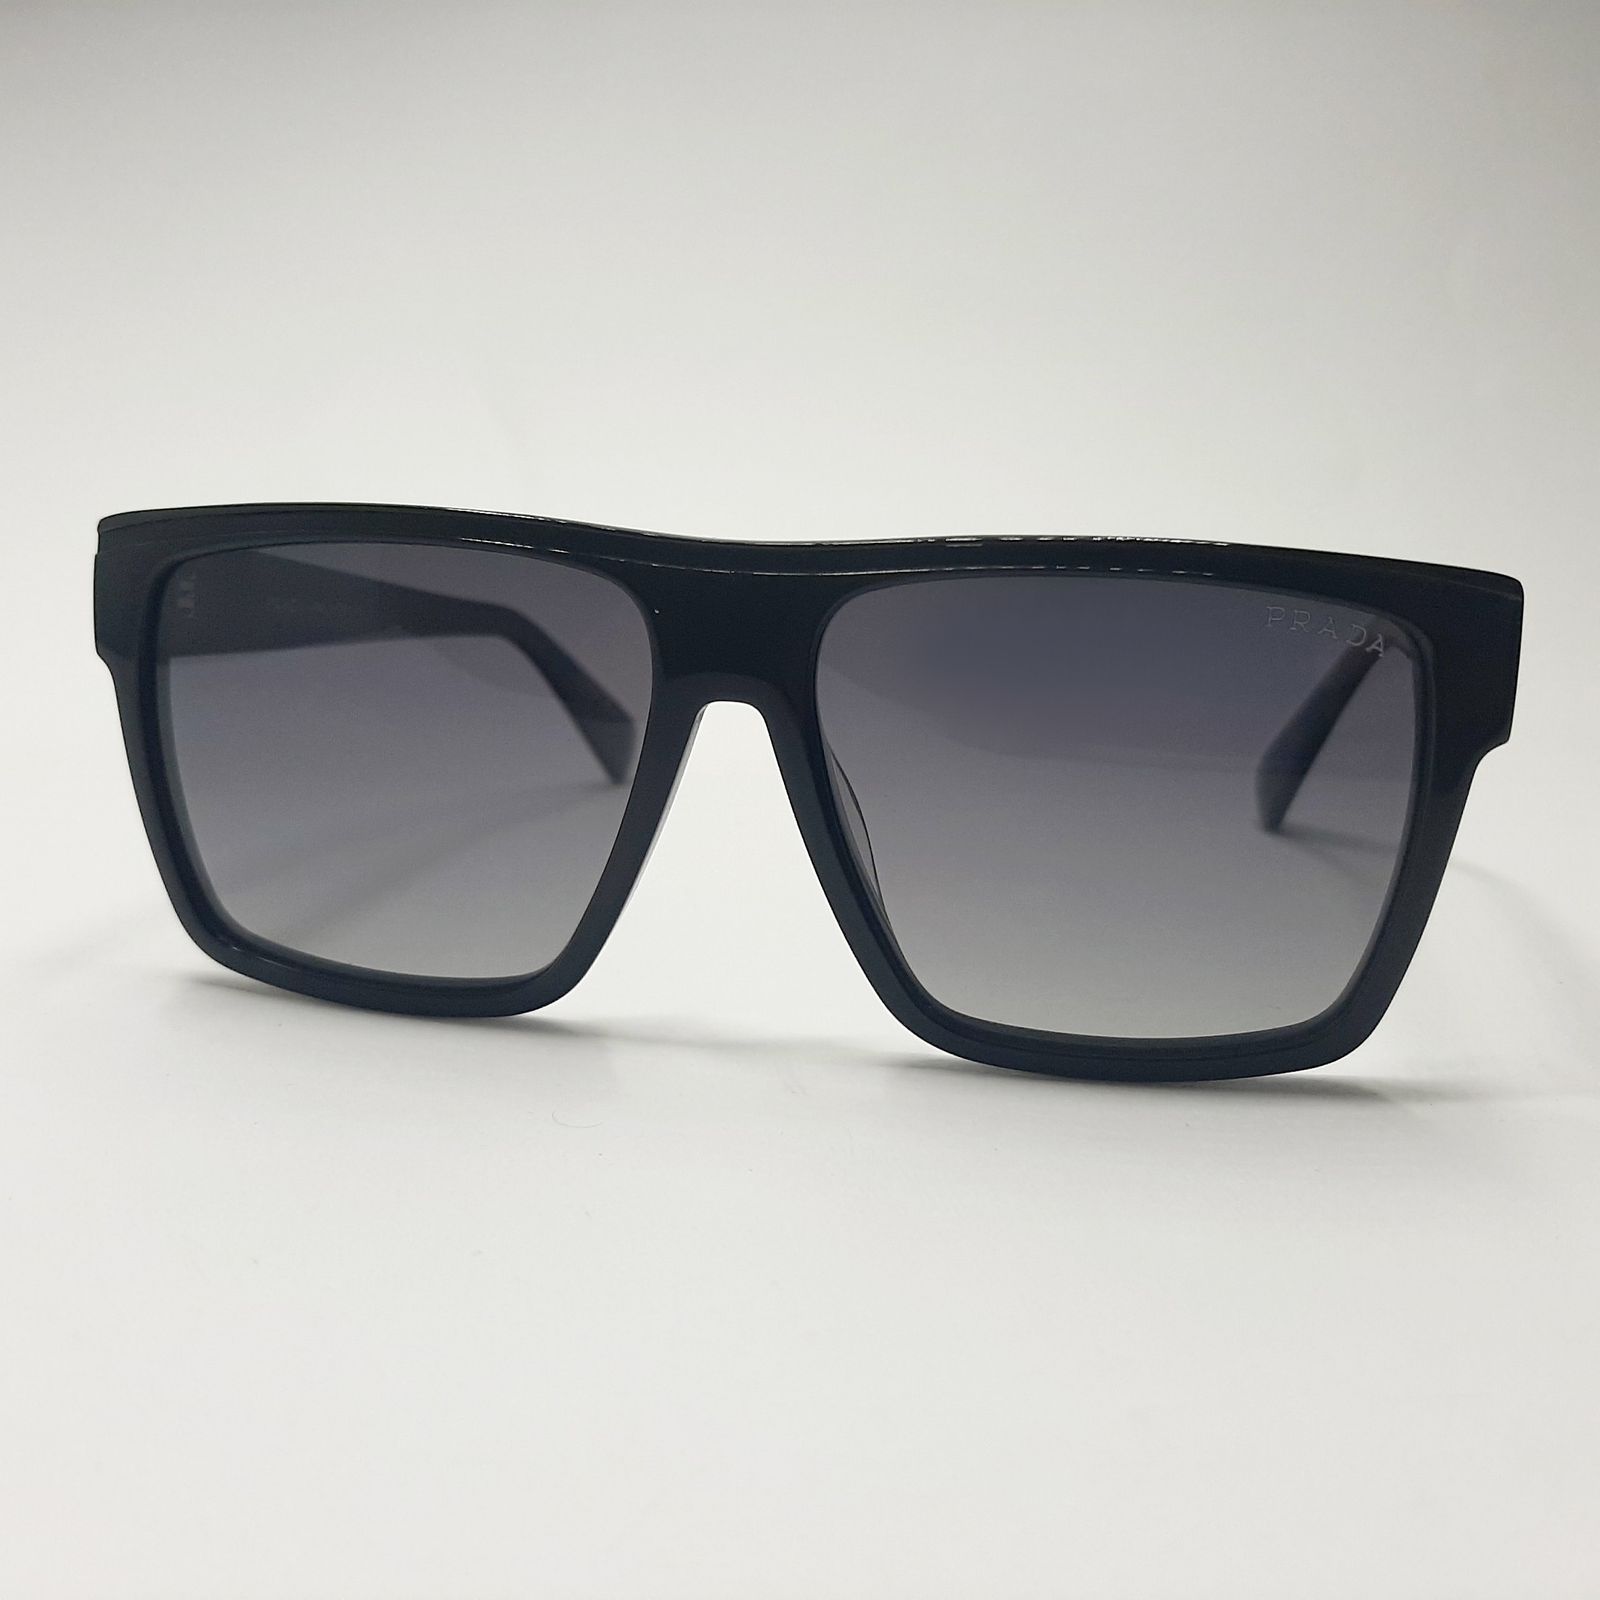 عینک آفتابی پرادا مدل VS8007c2 -  - 2